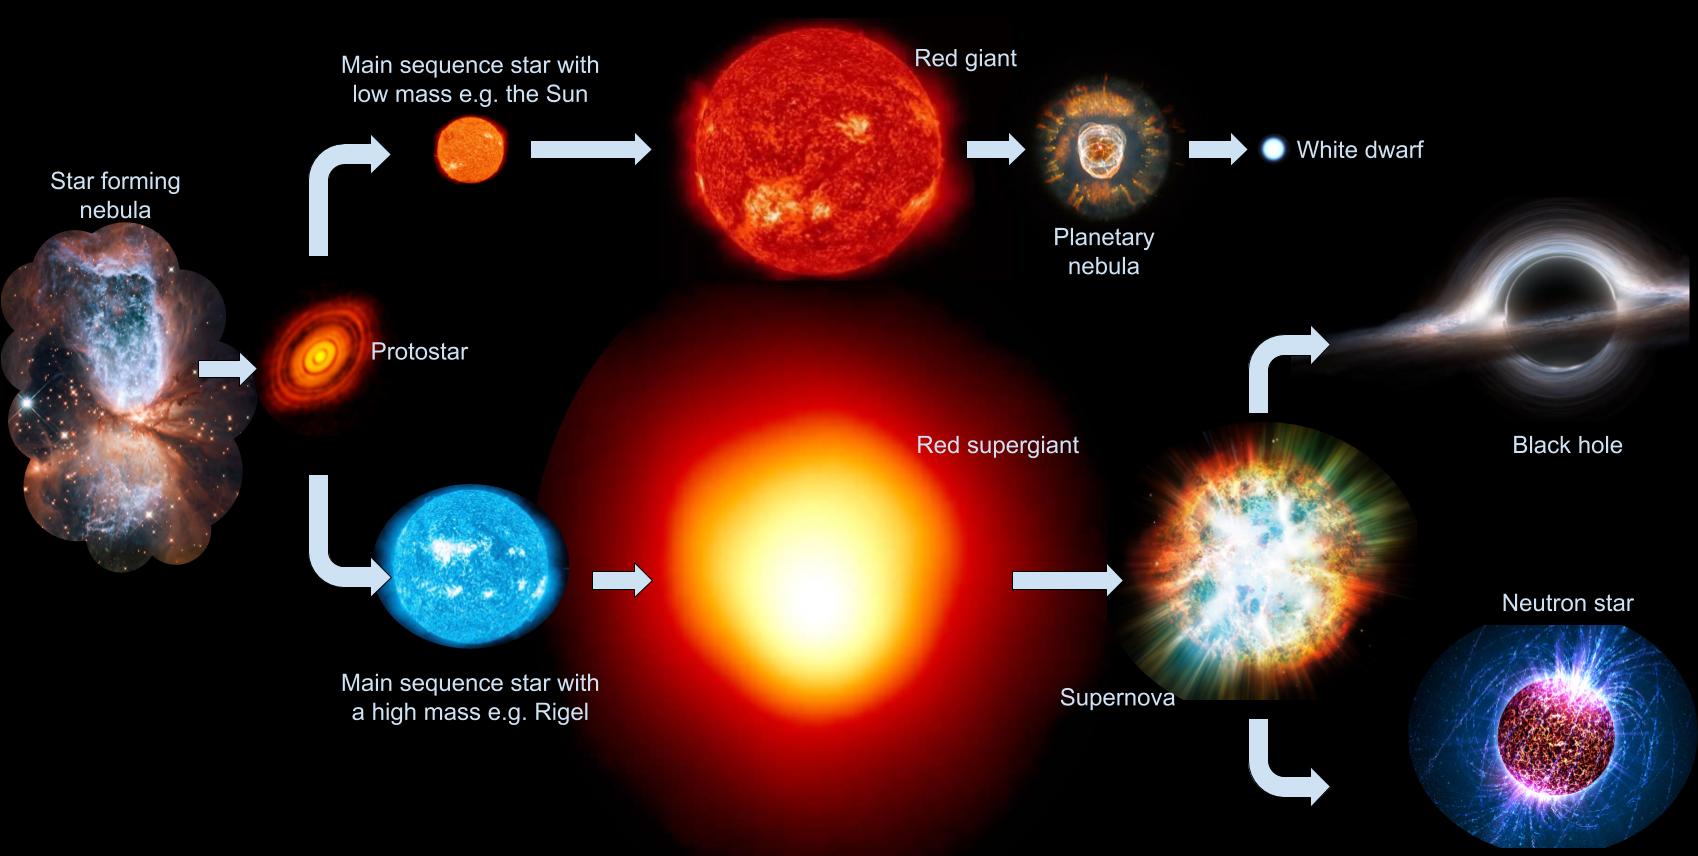 De levensloop van een ster hangt af van hoeveel massa hij bevat. Verreweg de meeste sterren beginnen als dwergster en eindigen hun leven als witte dwerg. Zwaardere protosterren beginnen als superreuzen, en eindigen na een supernova als neutronenster of een zwart gat. 